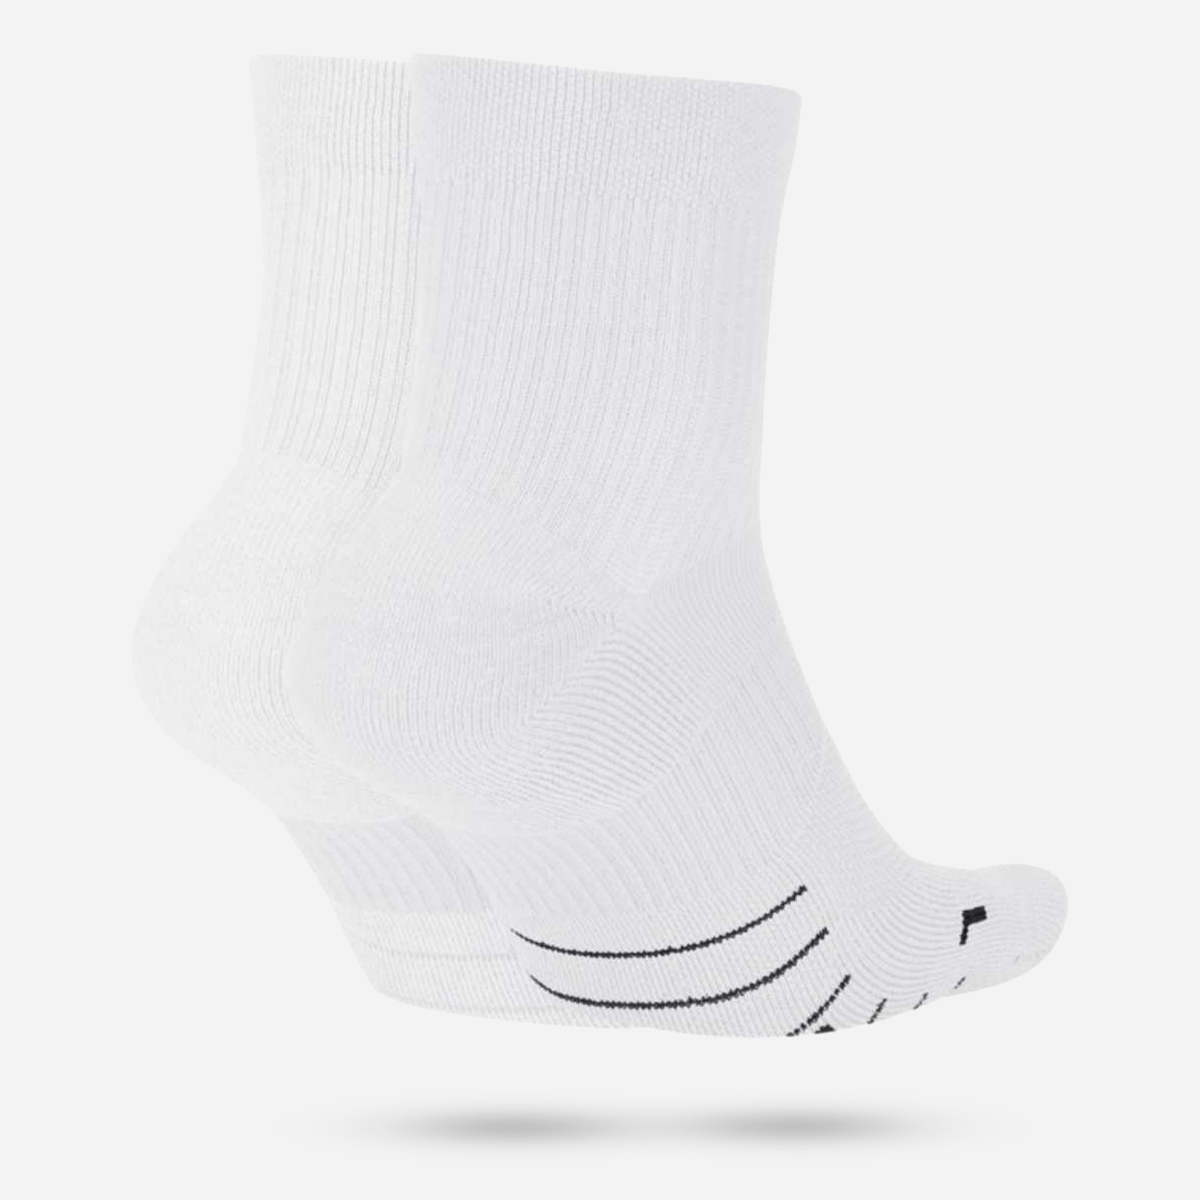 AN256996 Multiplier Running Ankle Socks